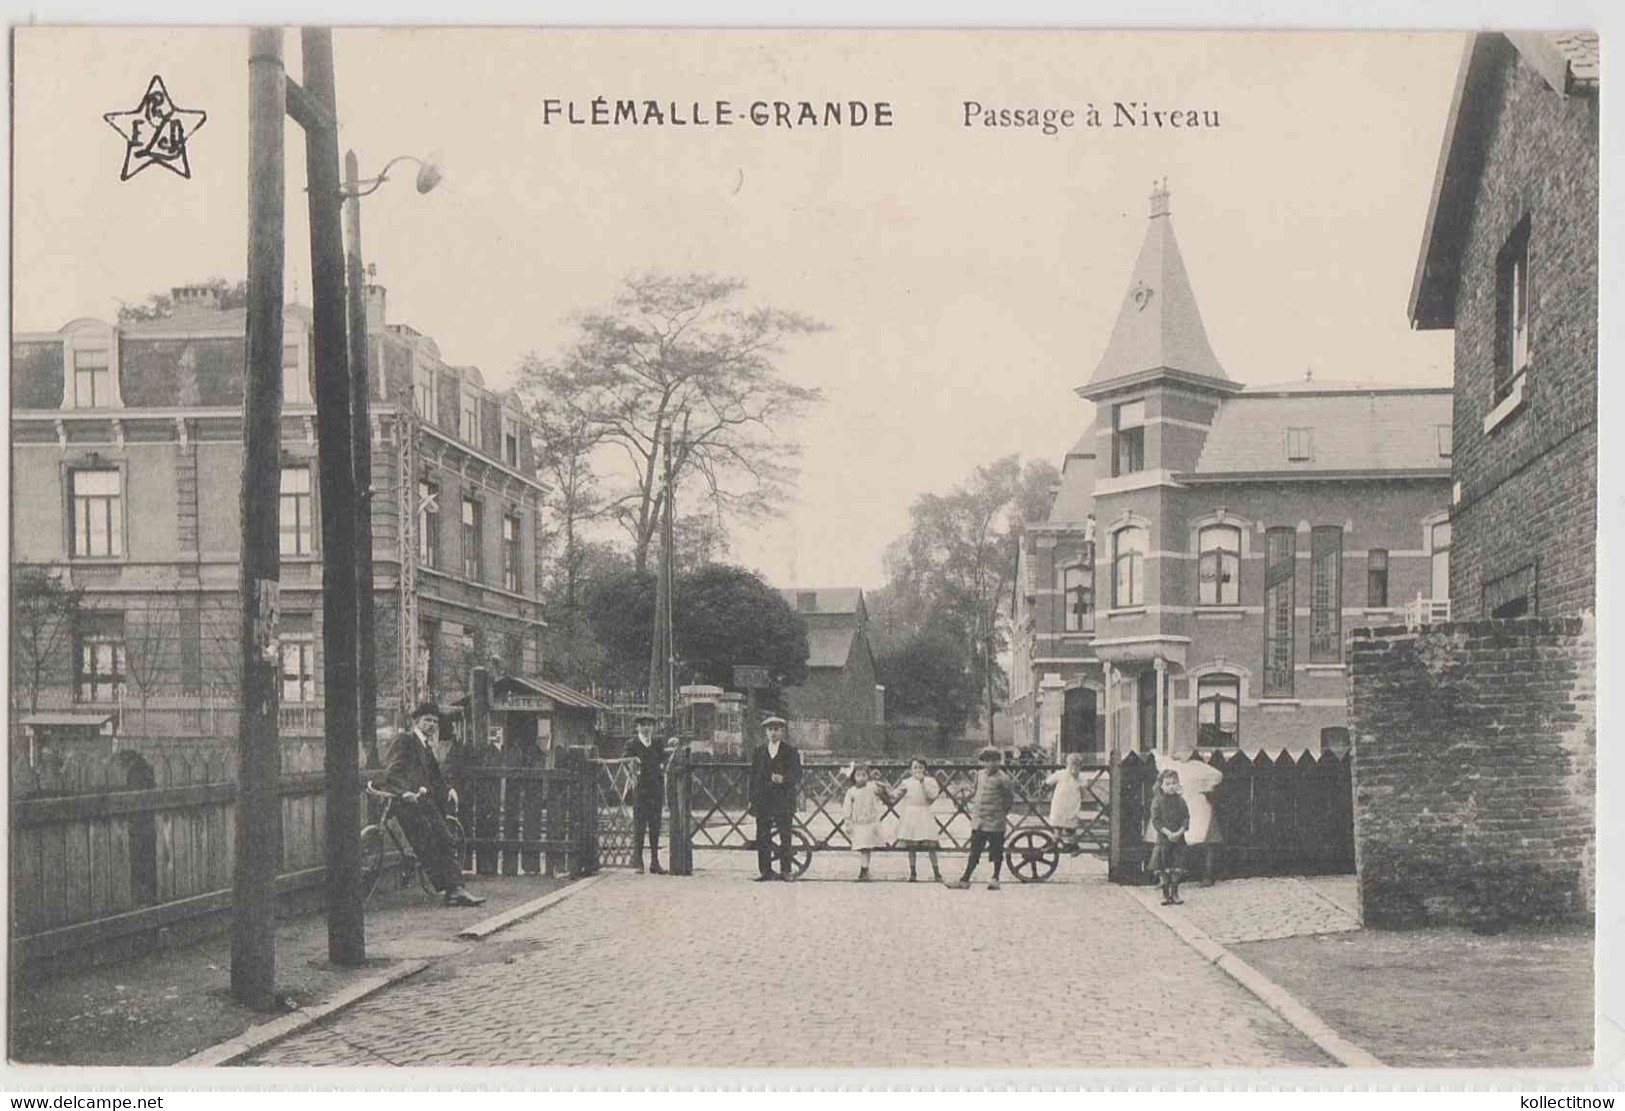 FLEMALLE - GRANDE - PASSAGE A NIVEAU - Flémalle